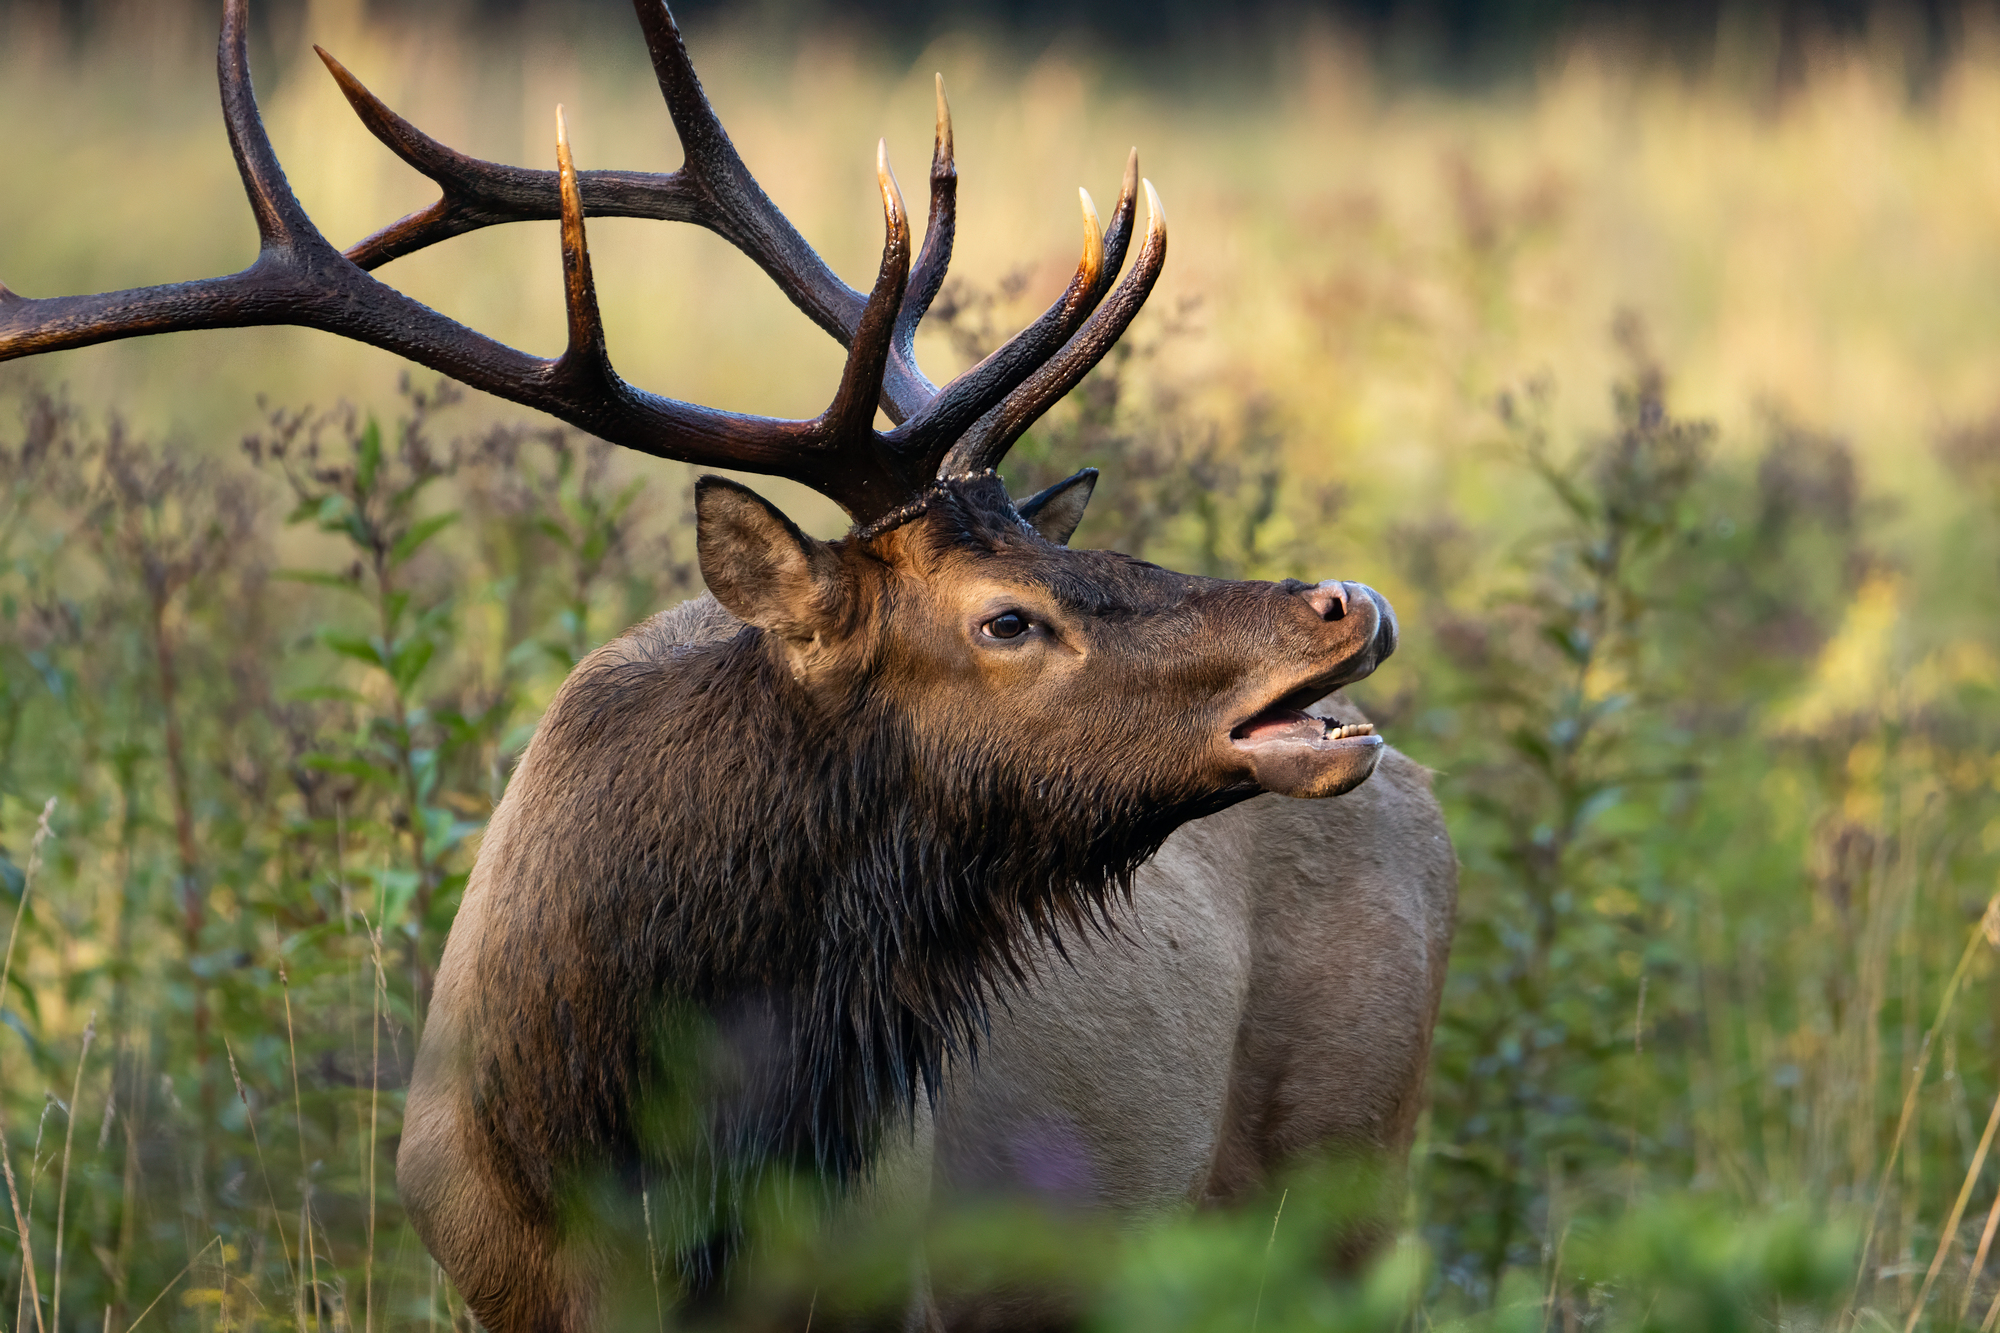 Bull elk lip curling. Image Credit: Matt Cuda, Envato Elements.